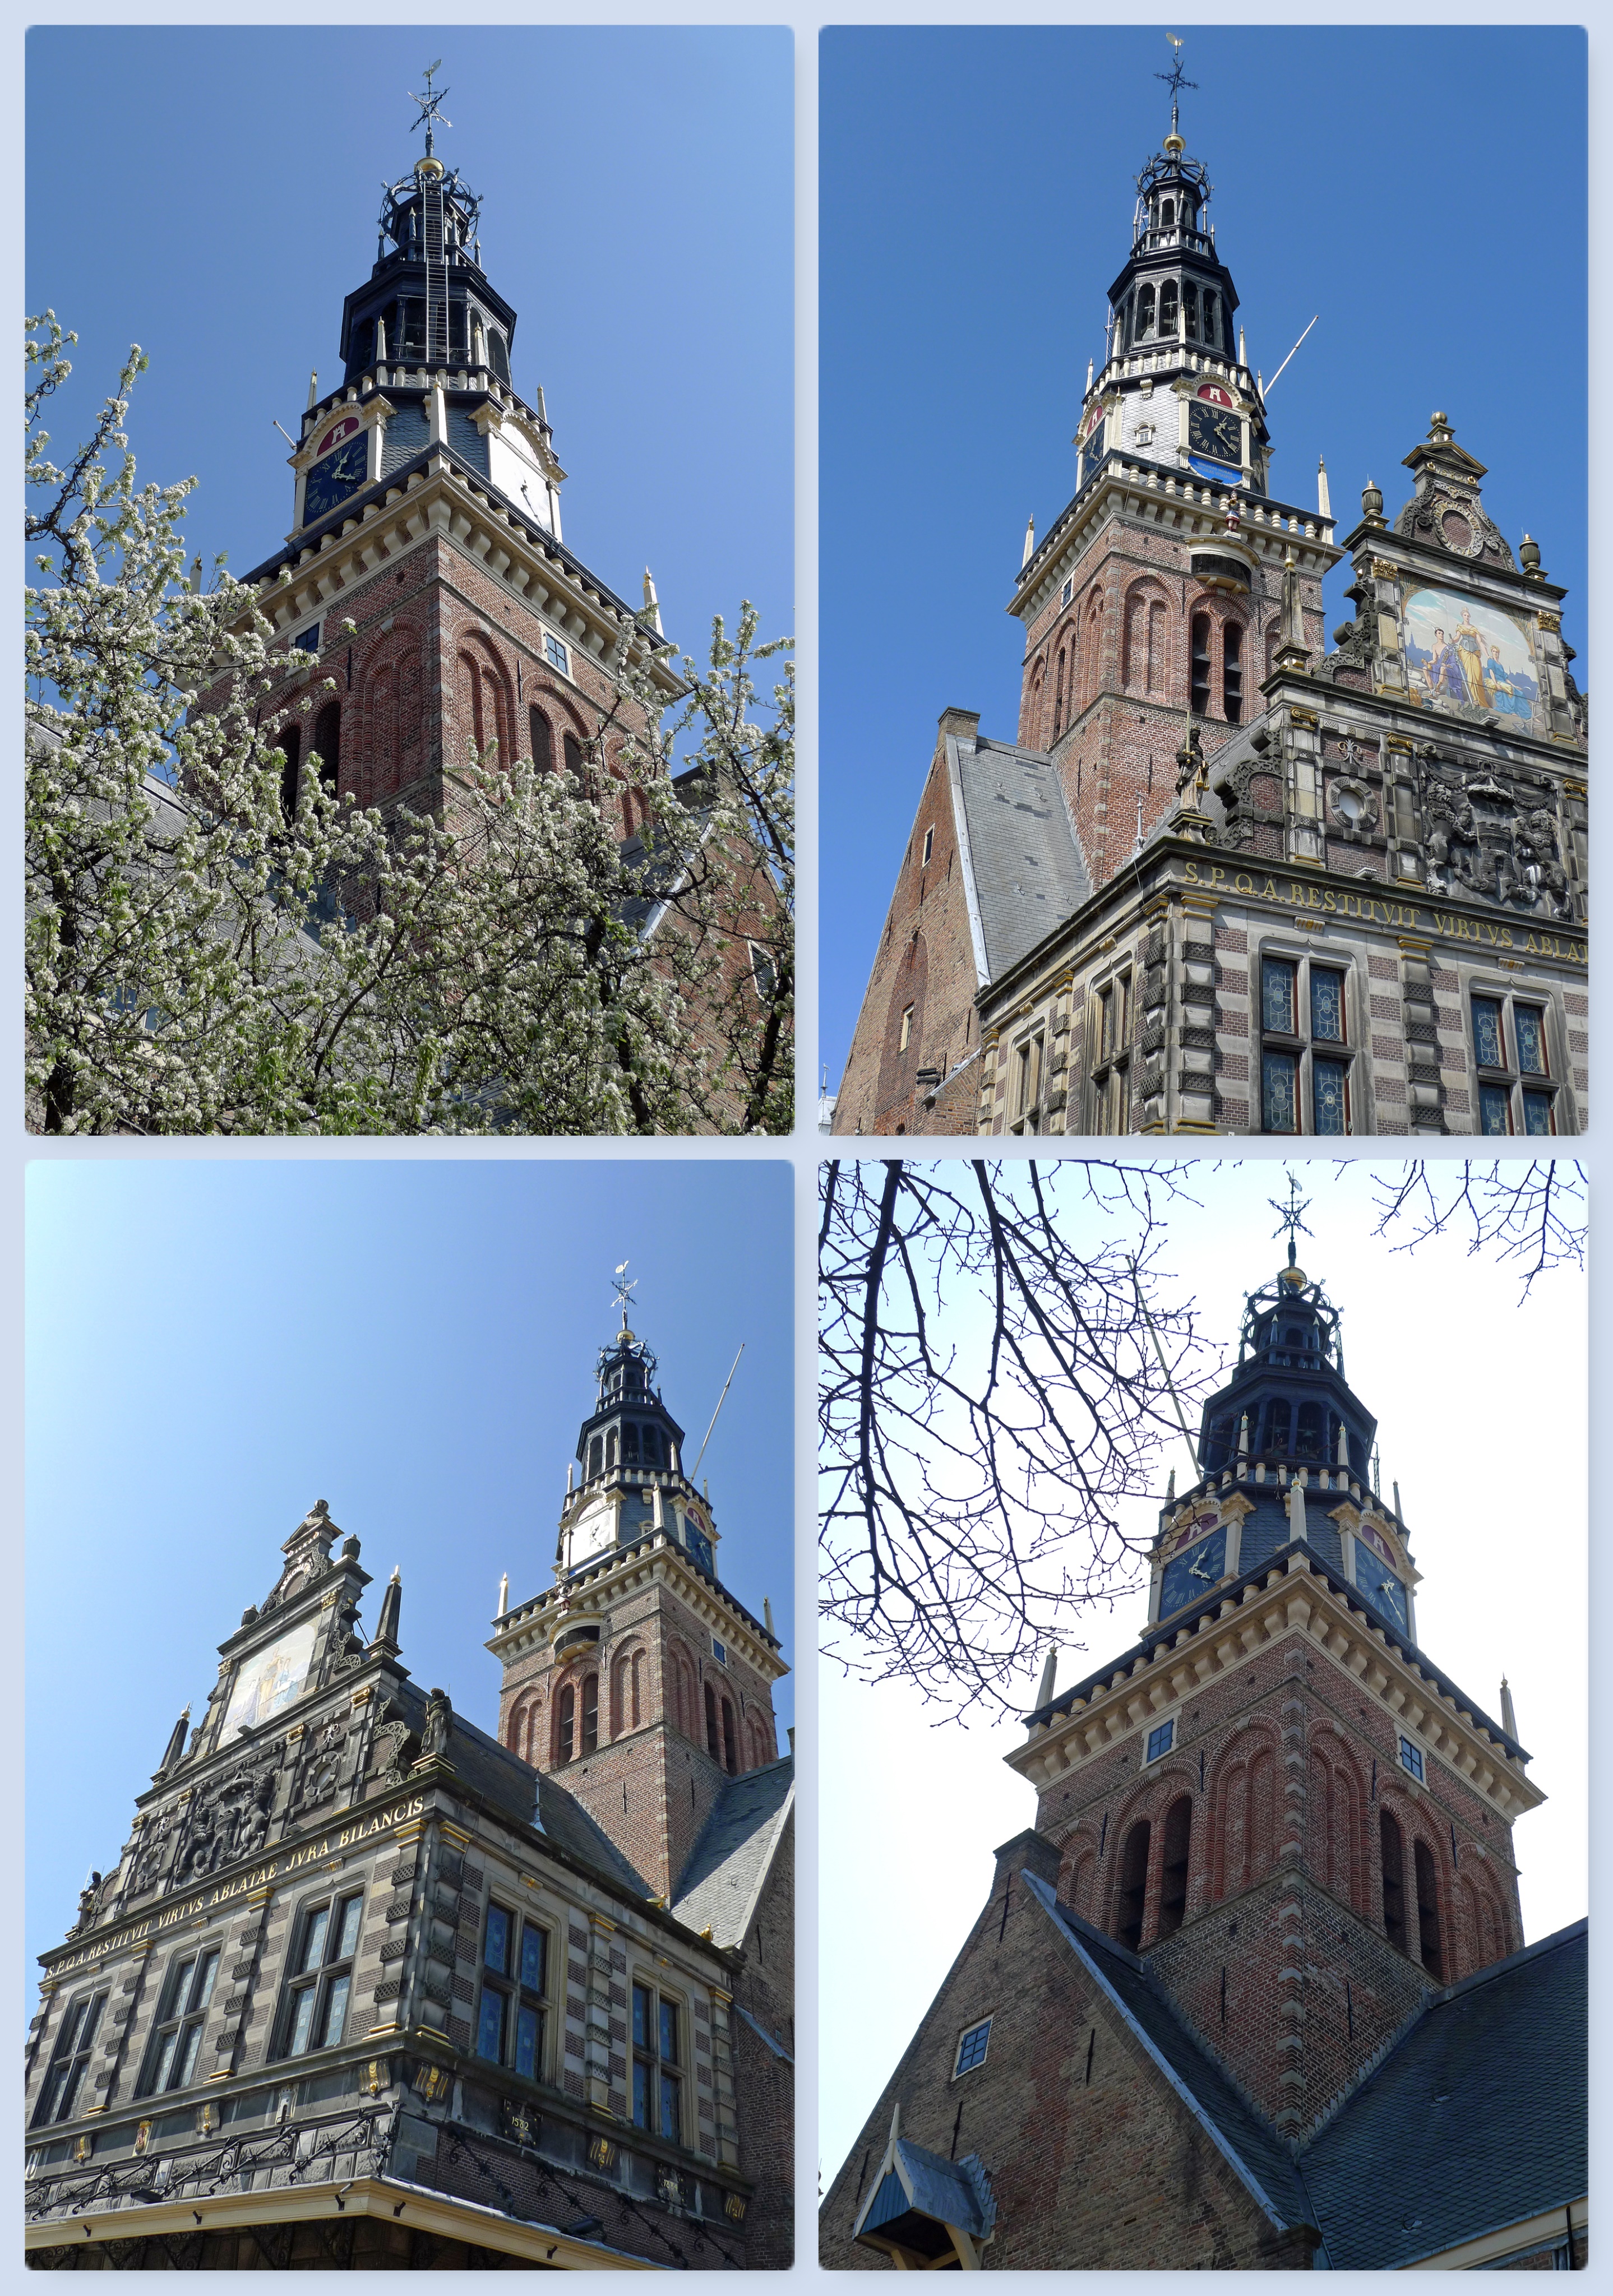 Nederland - Alkmaar, Waagtoren